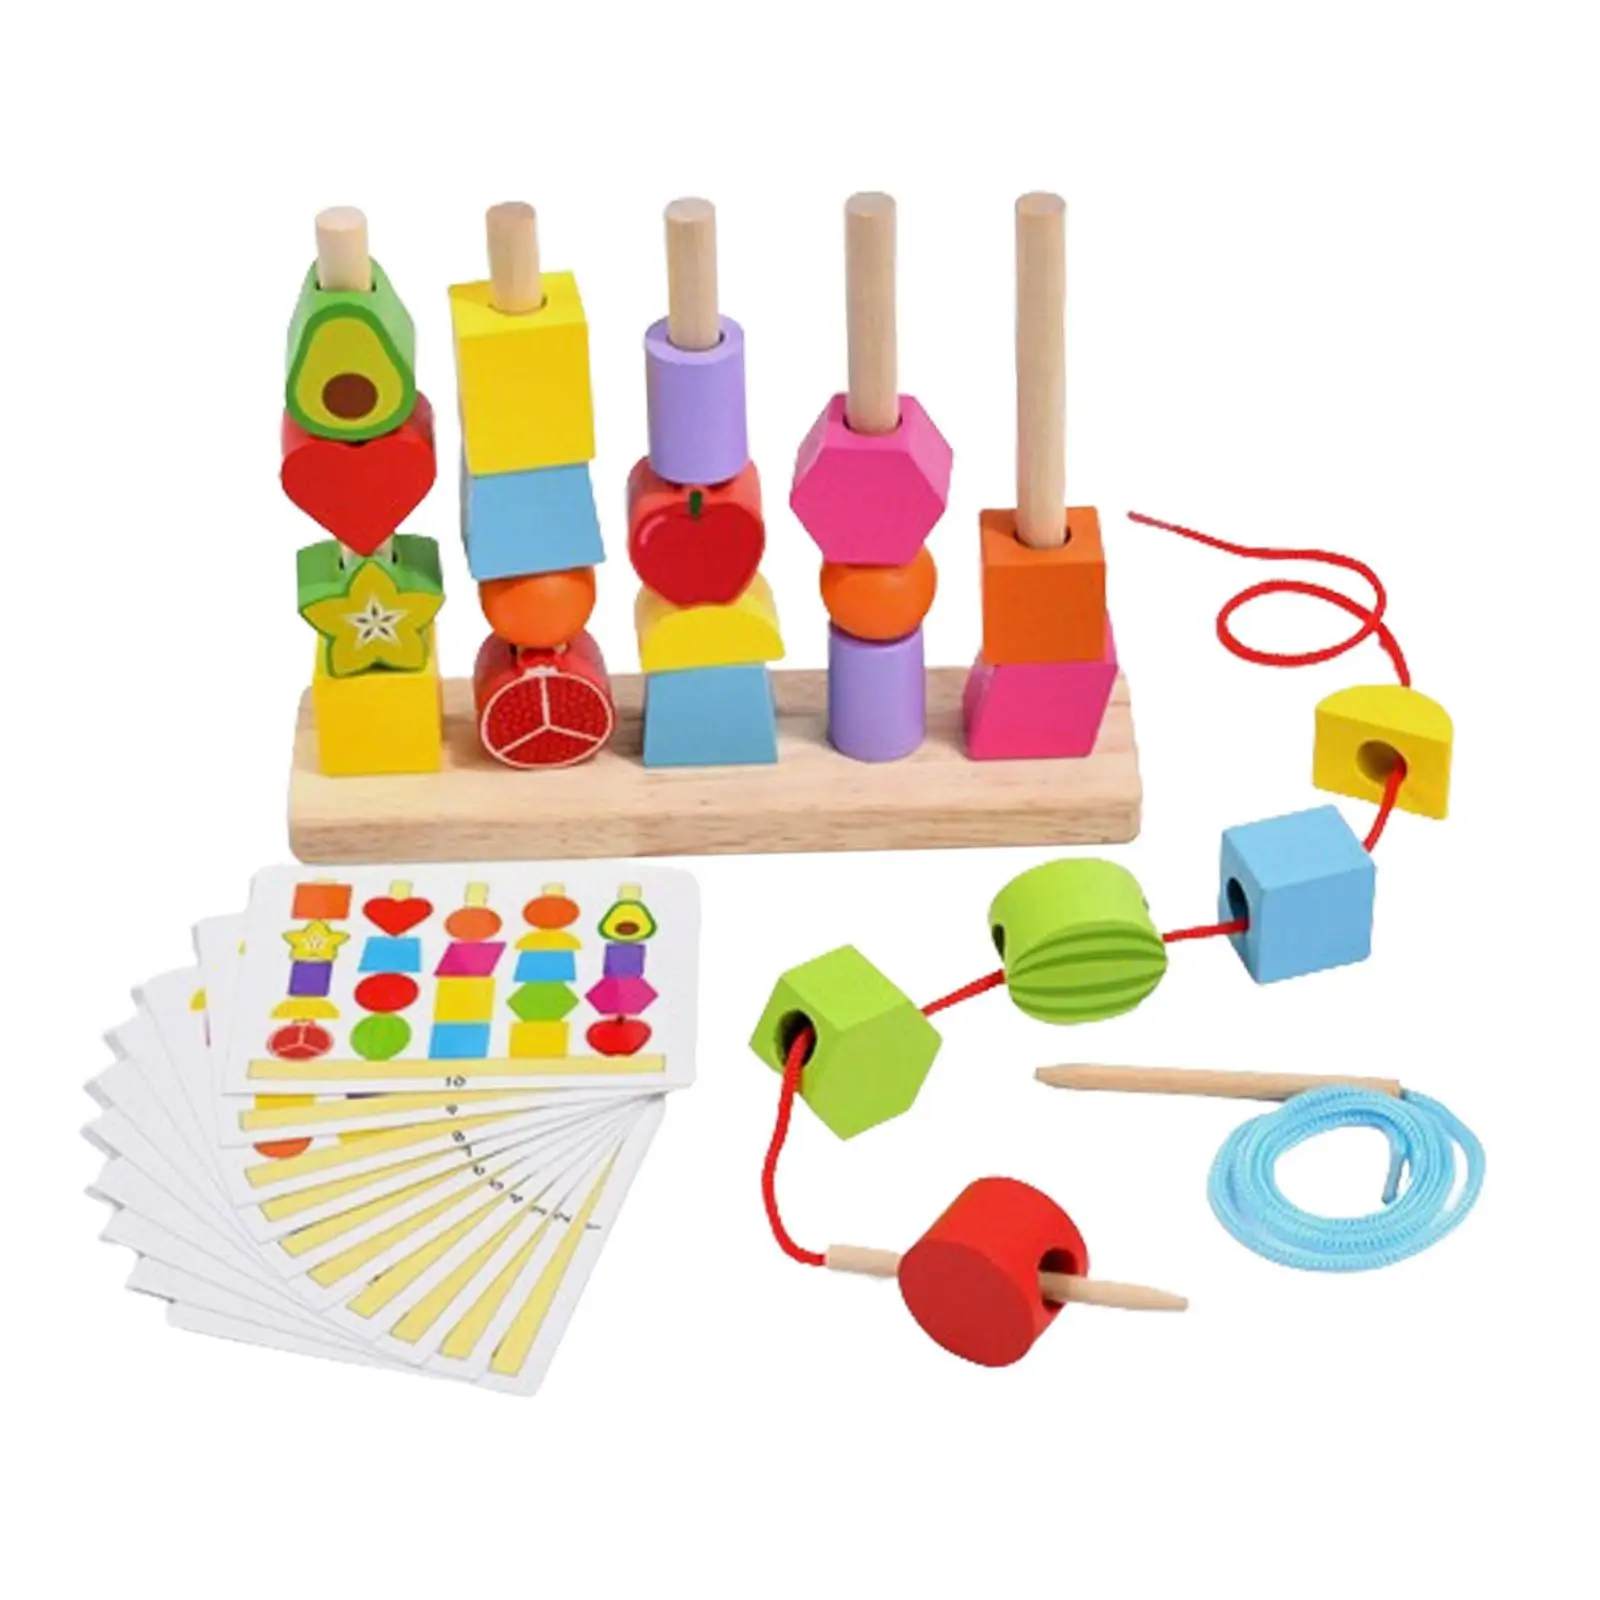 

Деревянные шарики, игрушка с блестками, цветные игрушки, развивающие игрушки для мелкой моторики, игрушки для детей дошкольного возраста, подарок для мальчиков и девочек